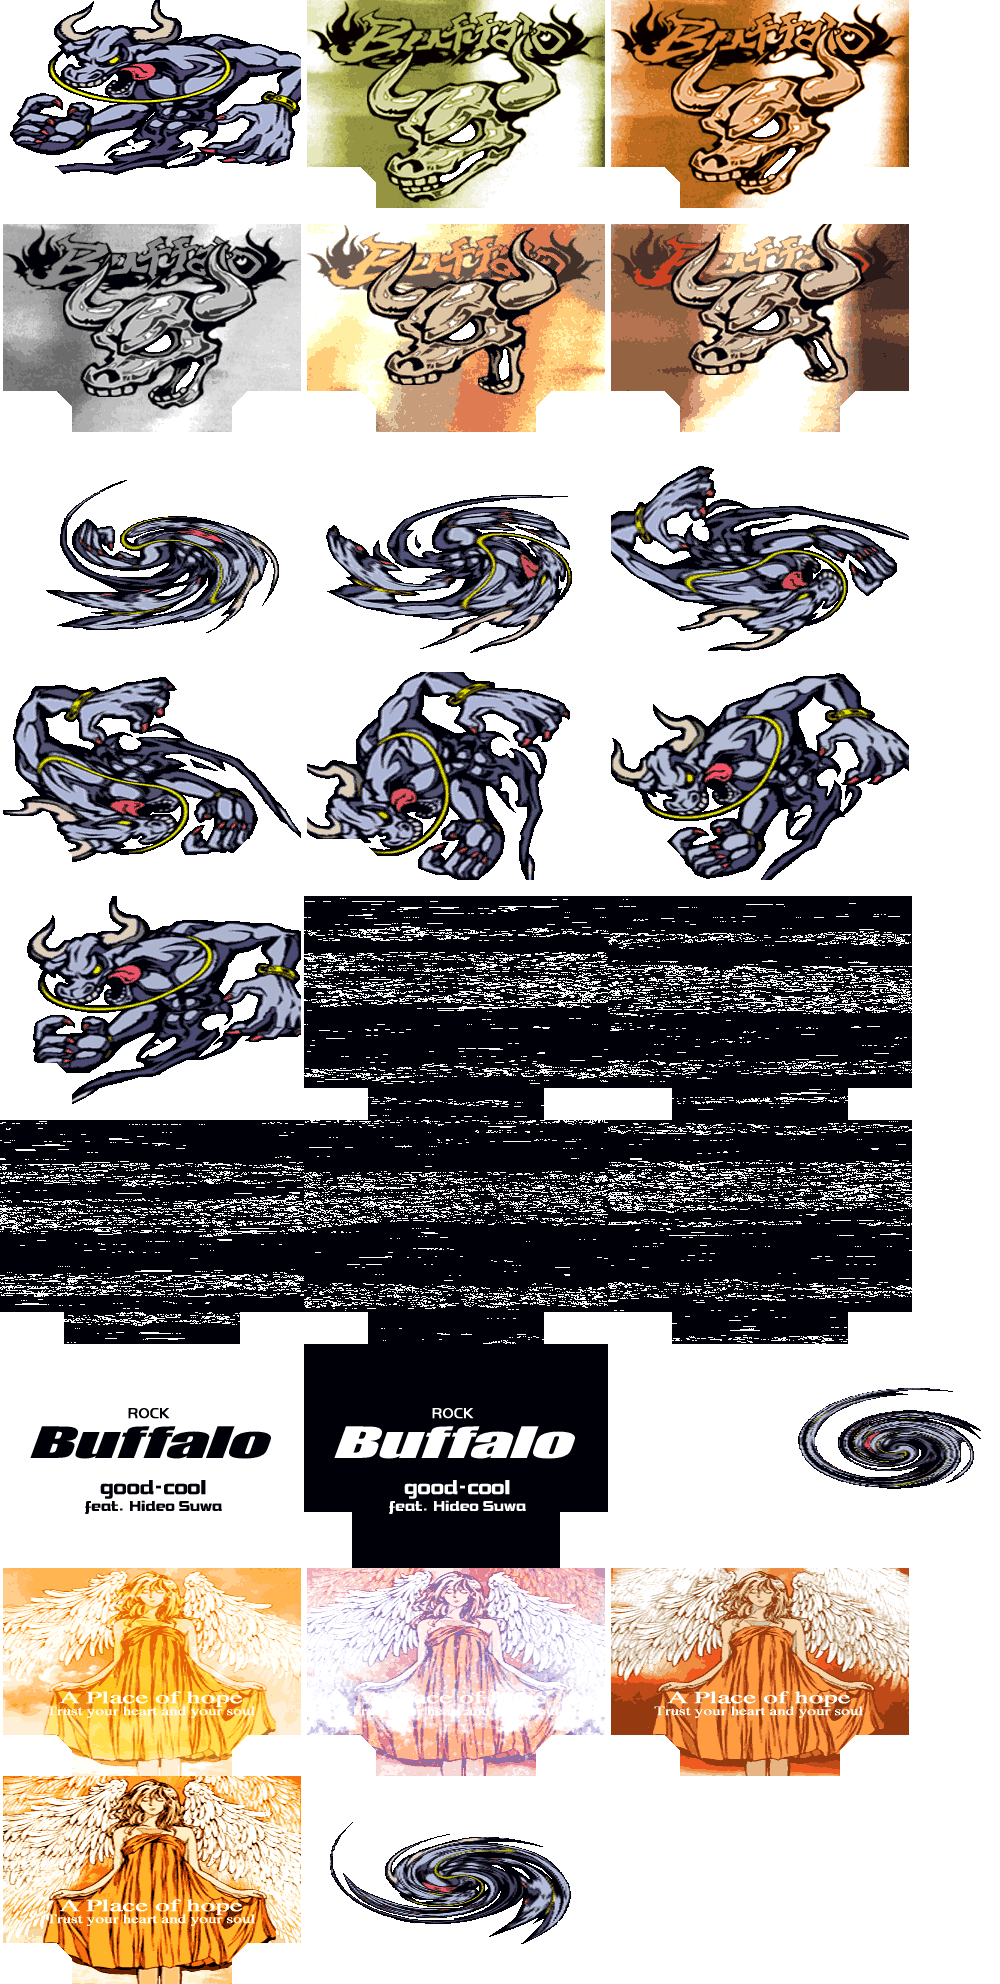 beatmania IIDX Series - Buffalo